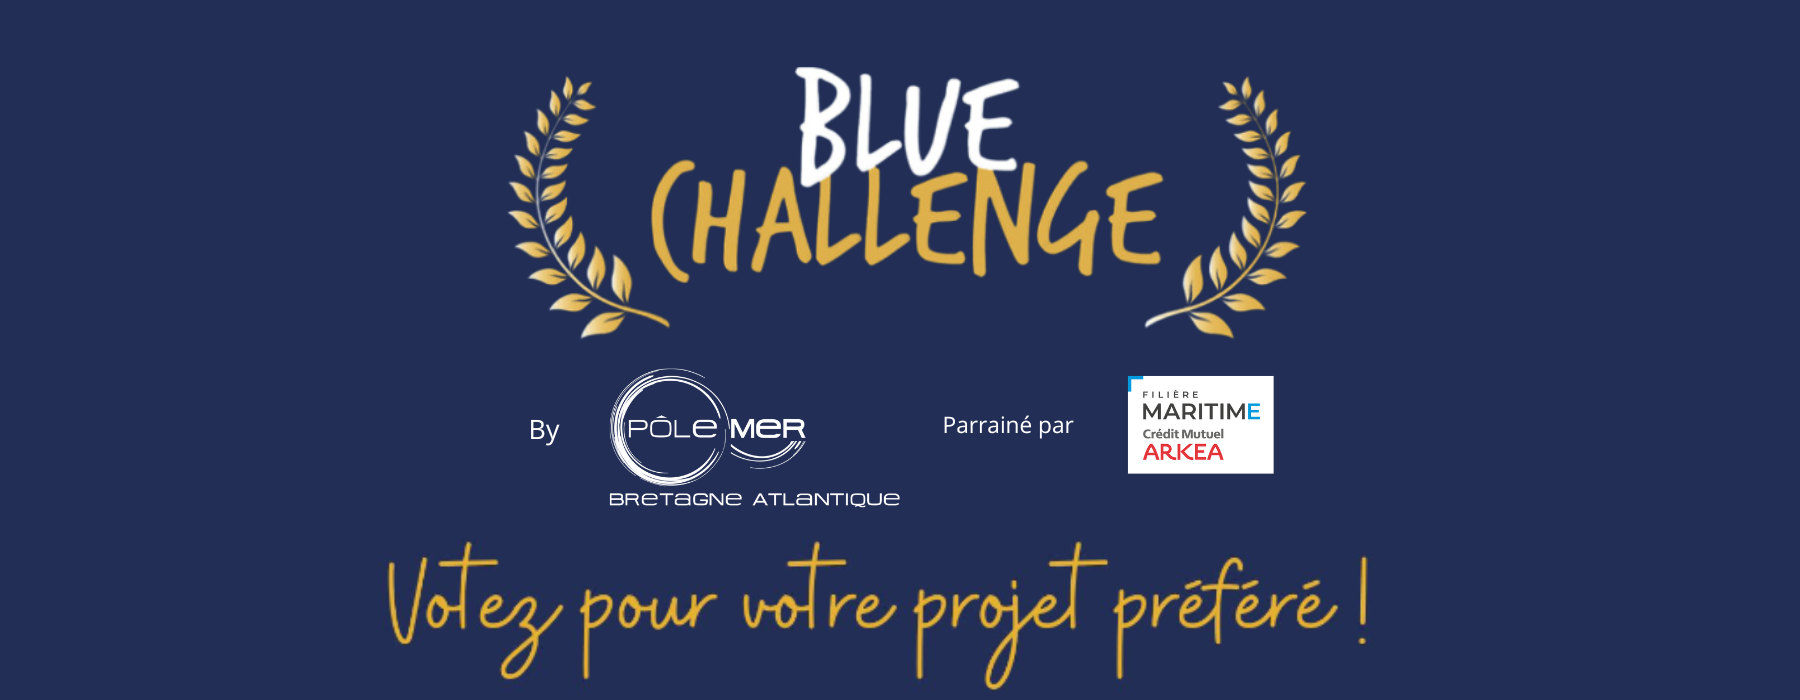 Blue challenge bannière copie